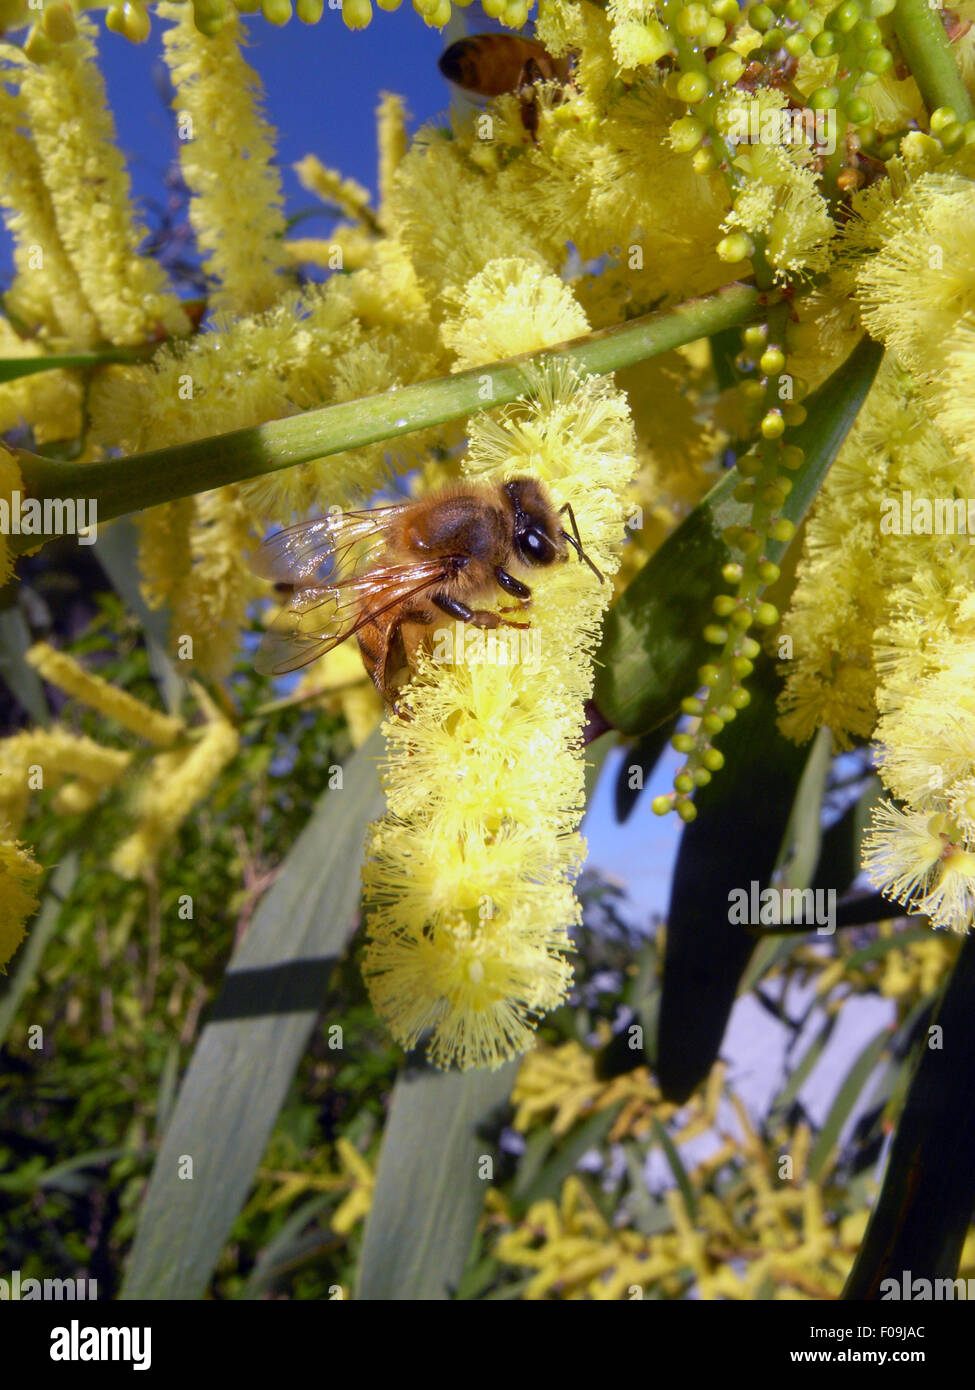 L'abeille européenne (Apis mellifera) la collecte du pollen de fleurs d'Australie wattle (Acacia sp.), l'Australie Occidentale Banque D'Images